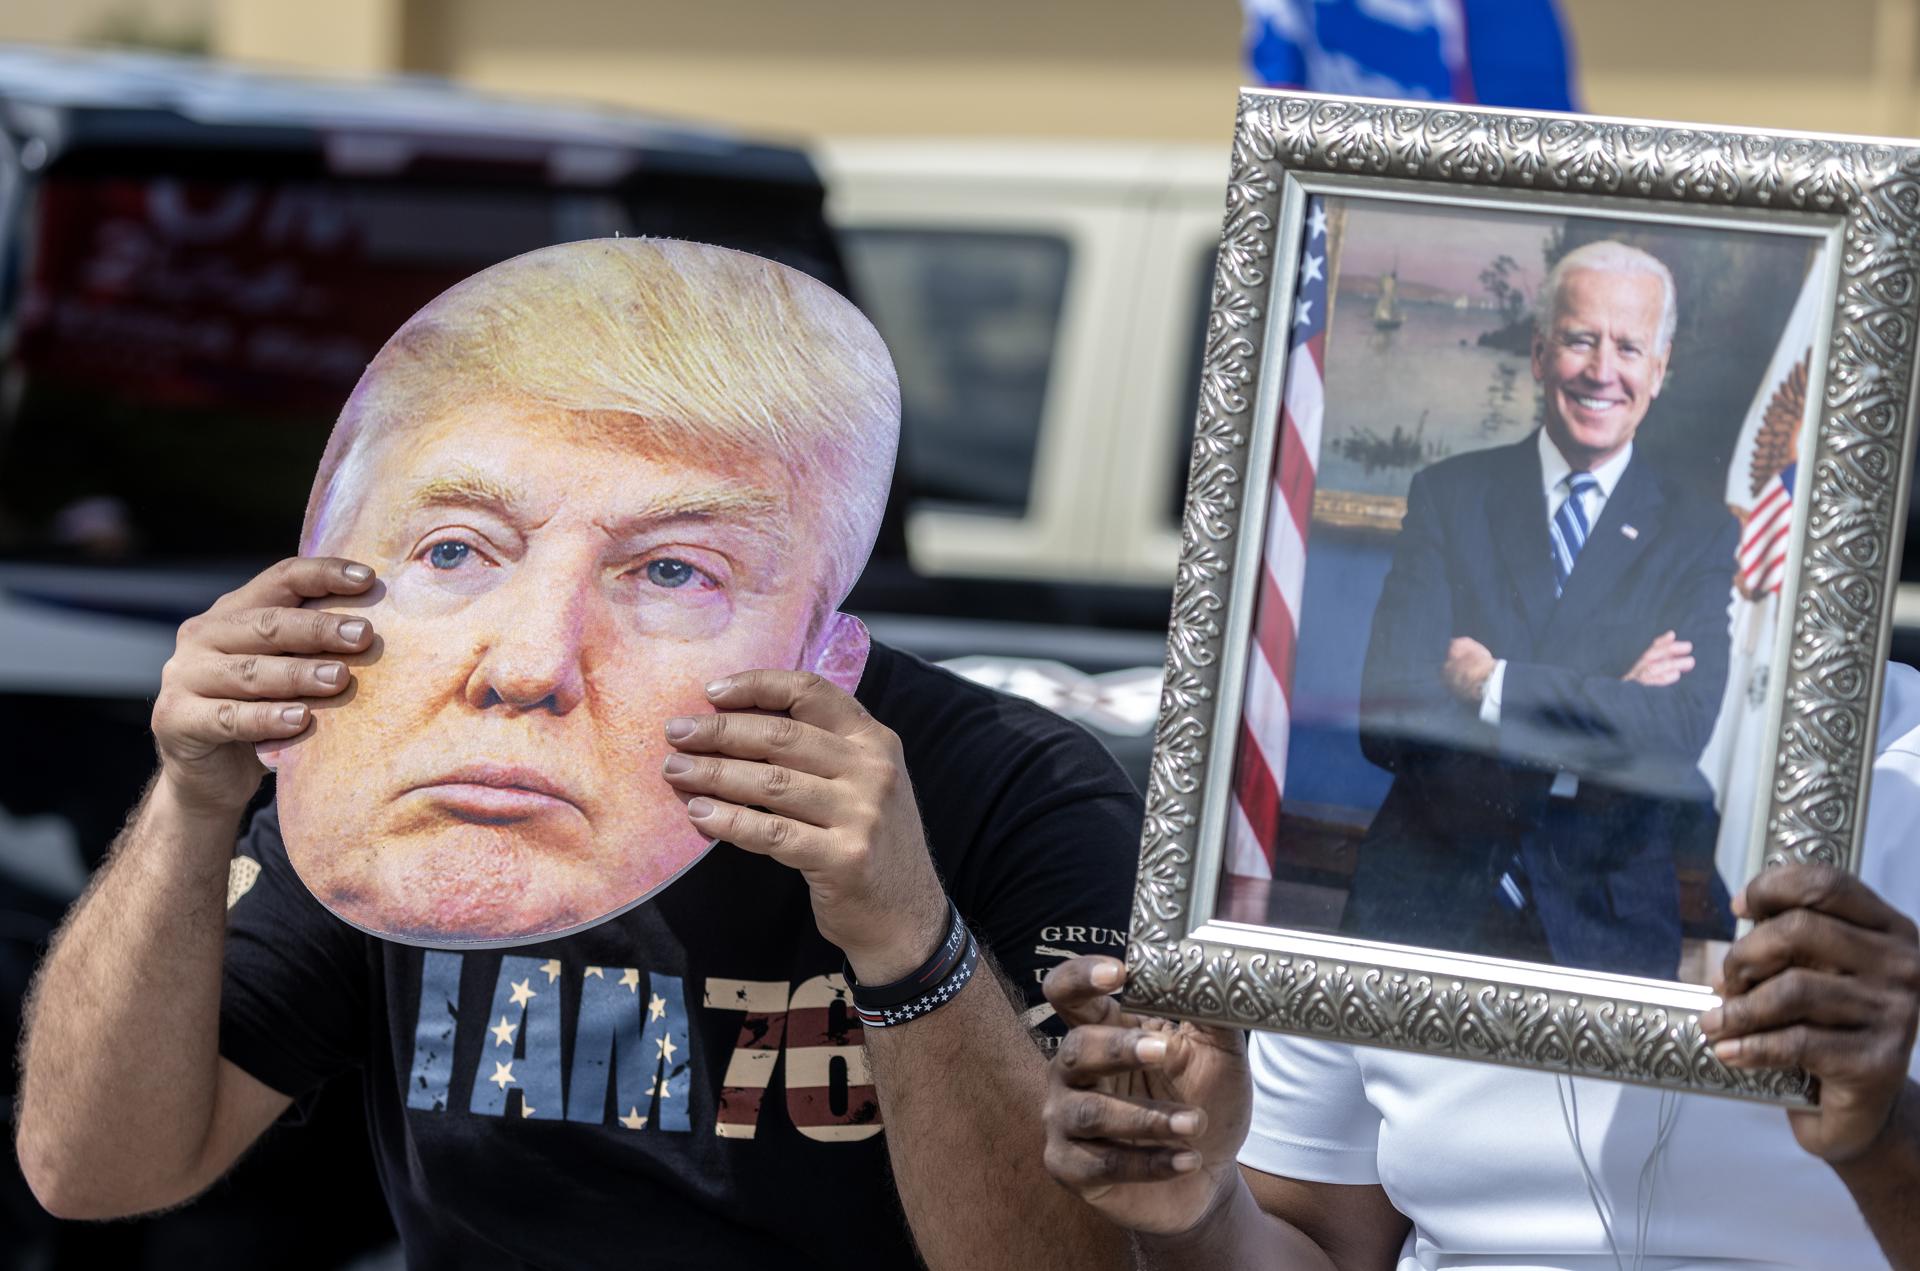 Votantes en EE UU inconformes con Biden y Trump como candidatos, según sondeo